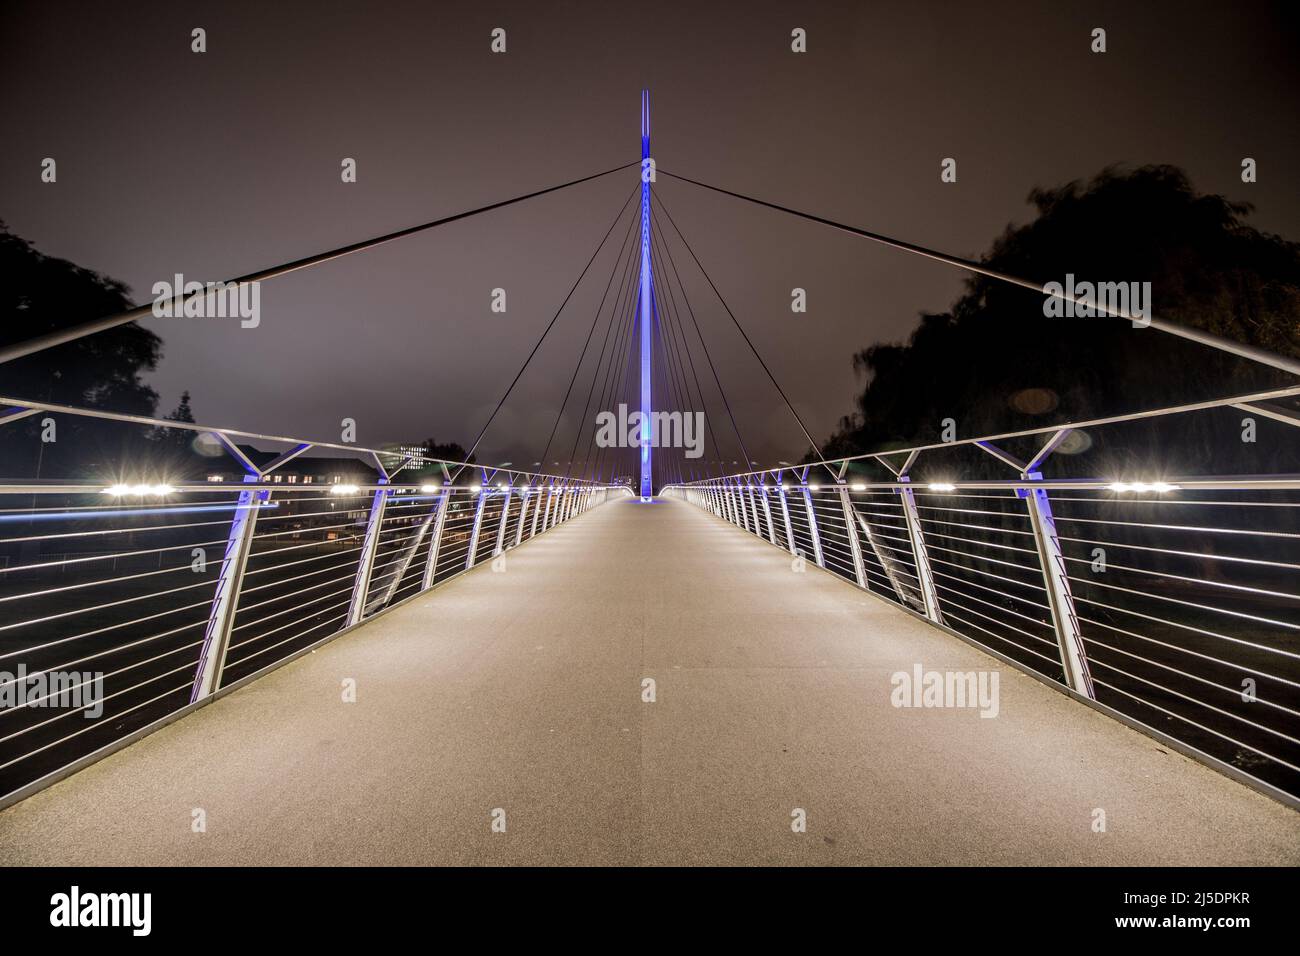 Die Christchurch Bridge, ursprünglich als Reading Pedestrian and Cycle Bridge bekannt, ist eine Fußgänger- und Fahrradbrücke über die Themse in Reading. Stockfoto